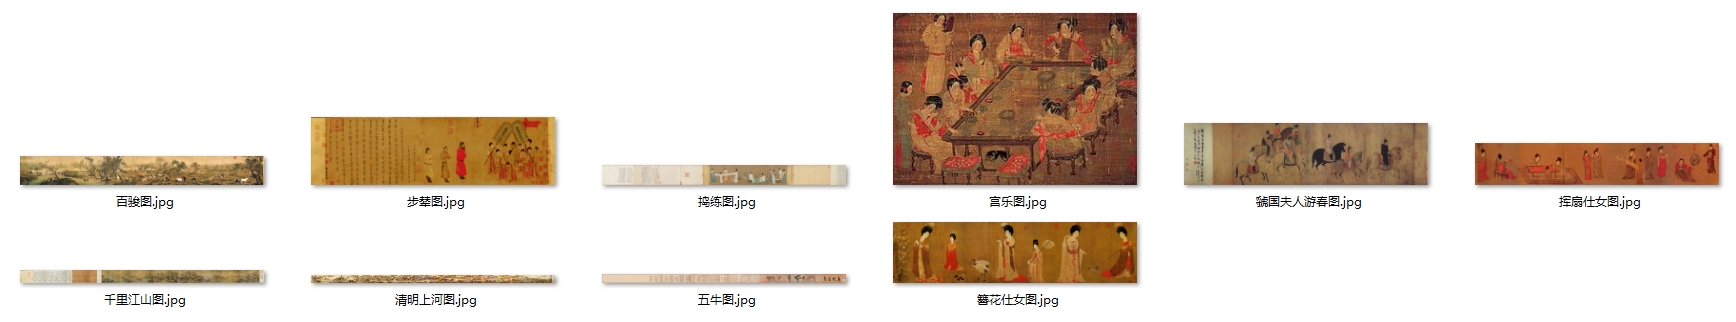 珍藏中国十大传世名画真正每一张都是超清图